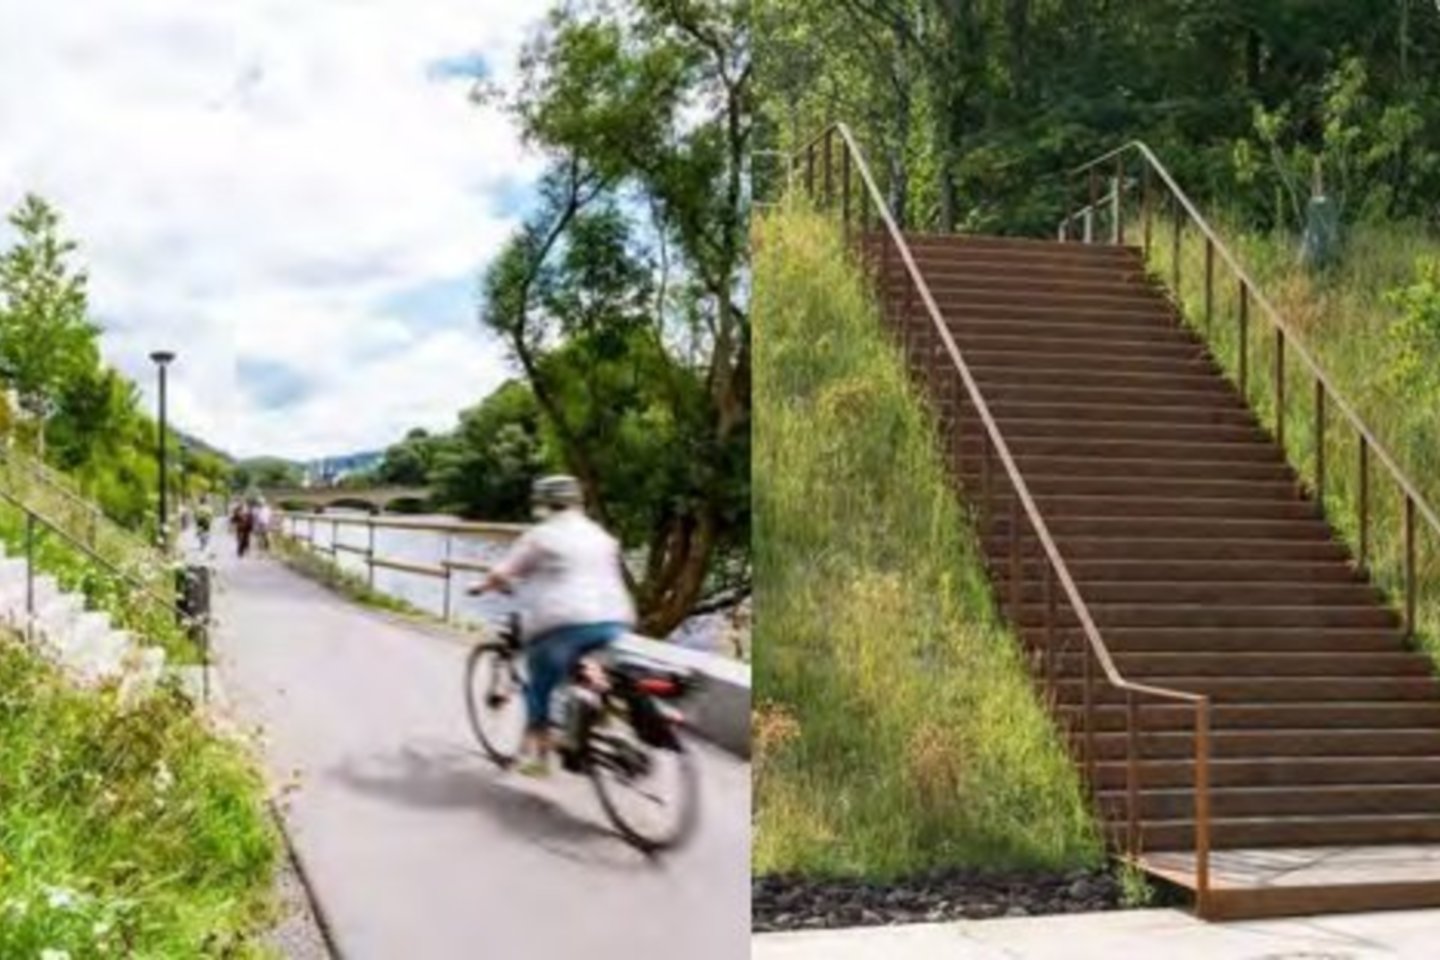 Vilniaus miesto savivaldybės iniciatyva Žirmūnų rajone planuojama sutvarkyti žaliąją erdvę tarp S. Žukausko ir Minties gatvių.<br> Iš projektinių pasiūlymų.